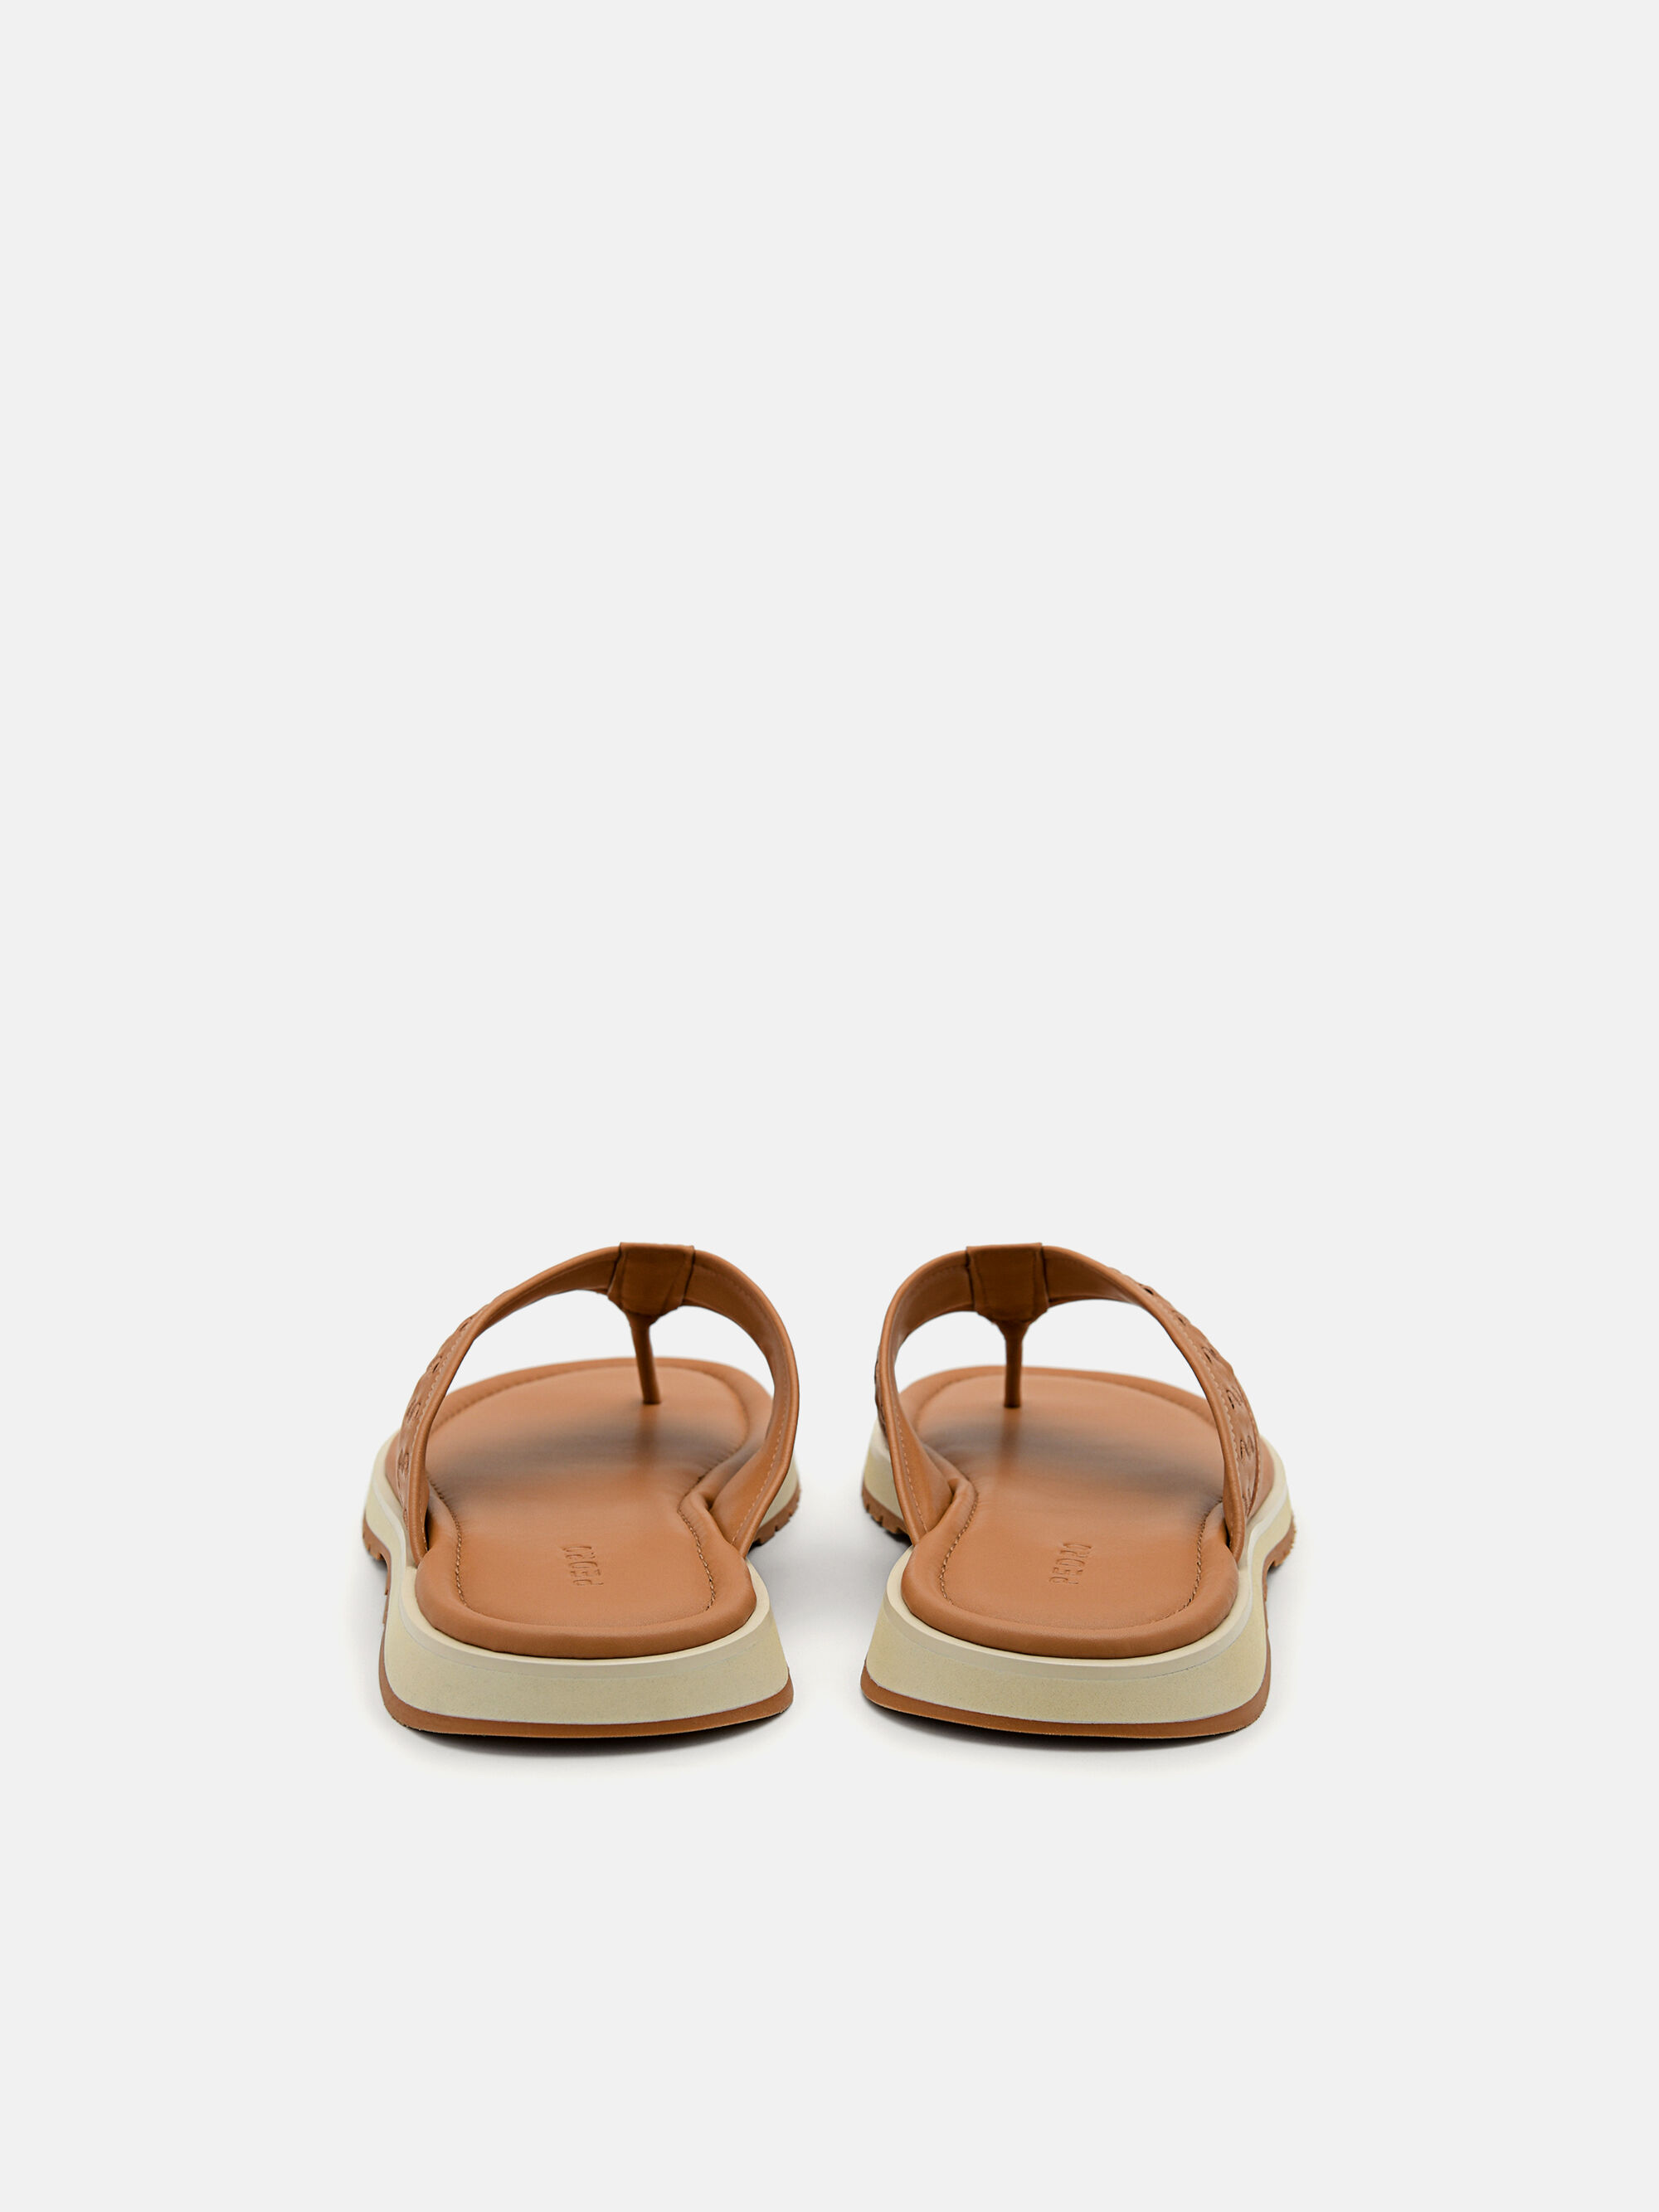 Woven Thong Sandals, Camel